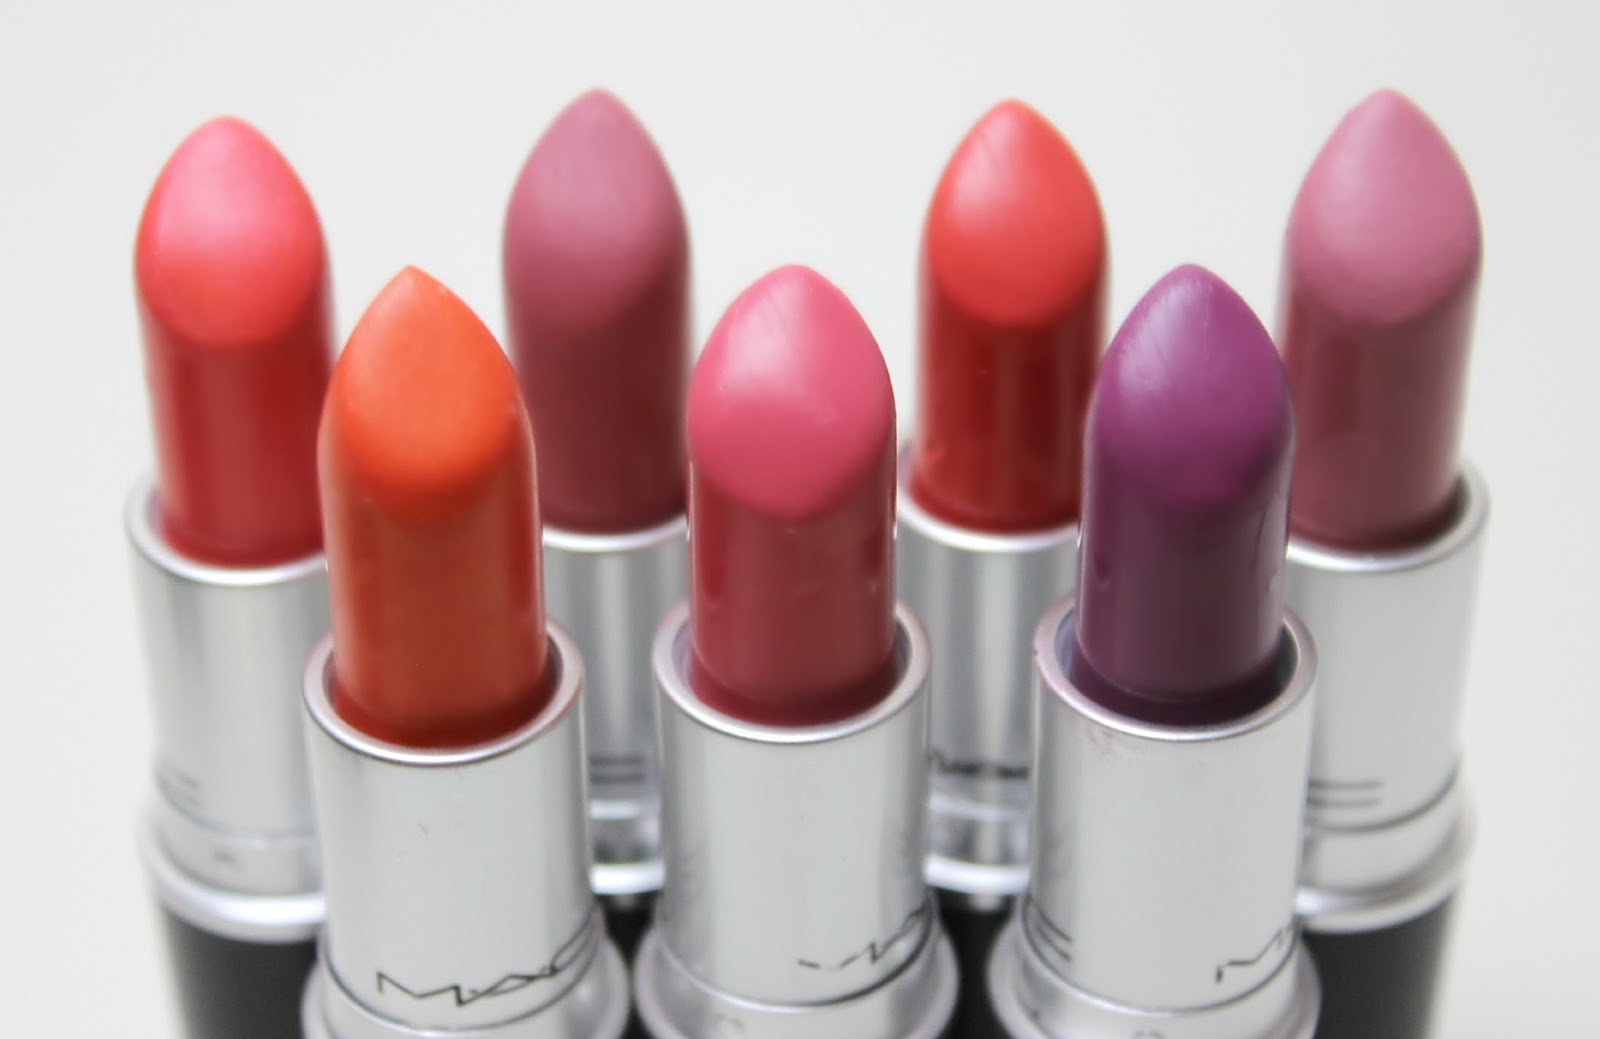 A picture of MAC lipsticks